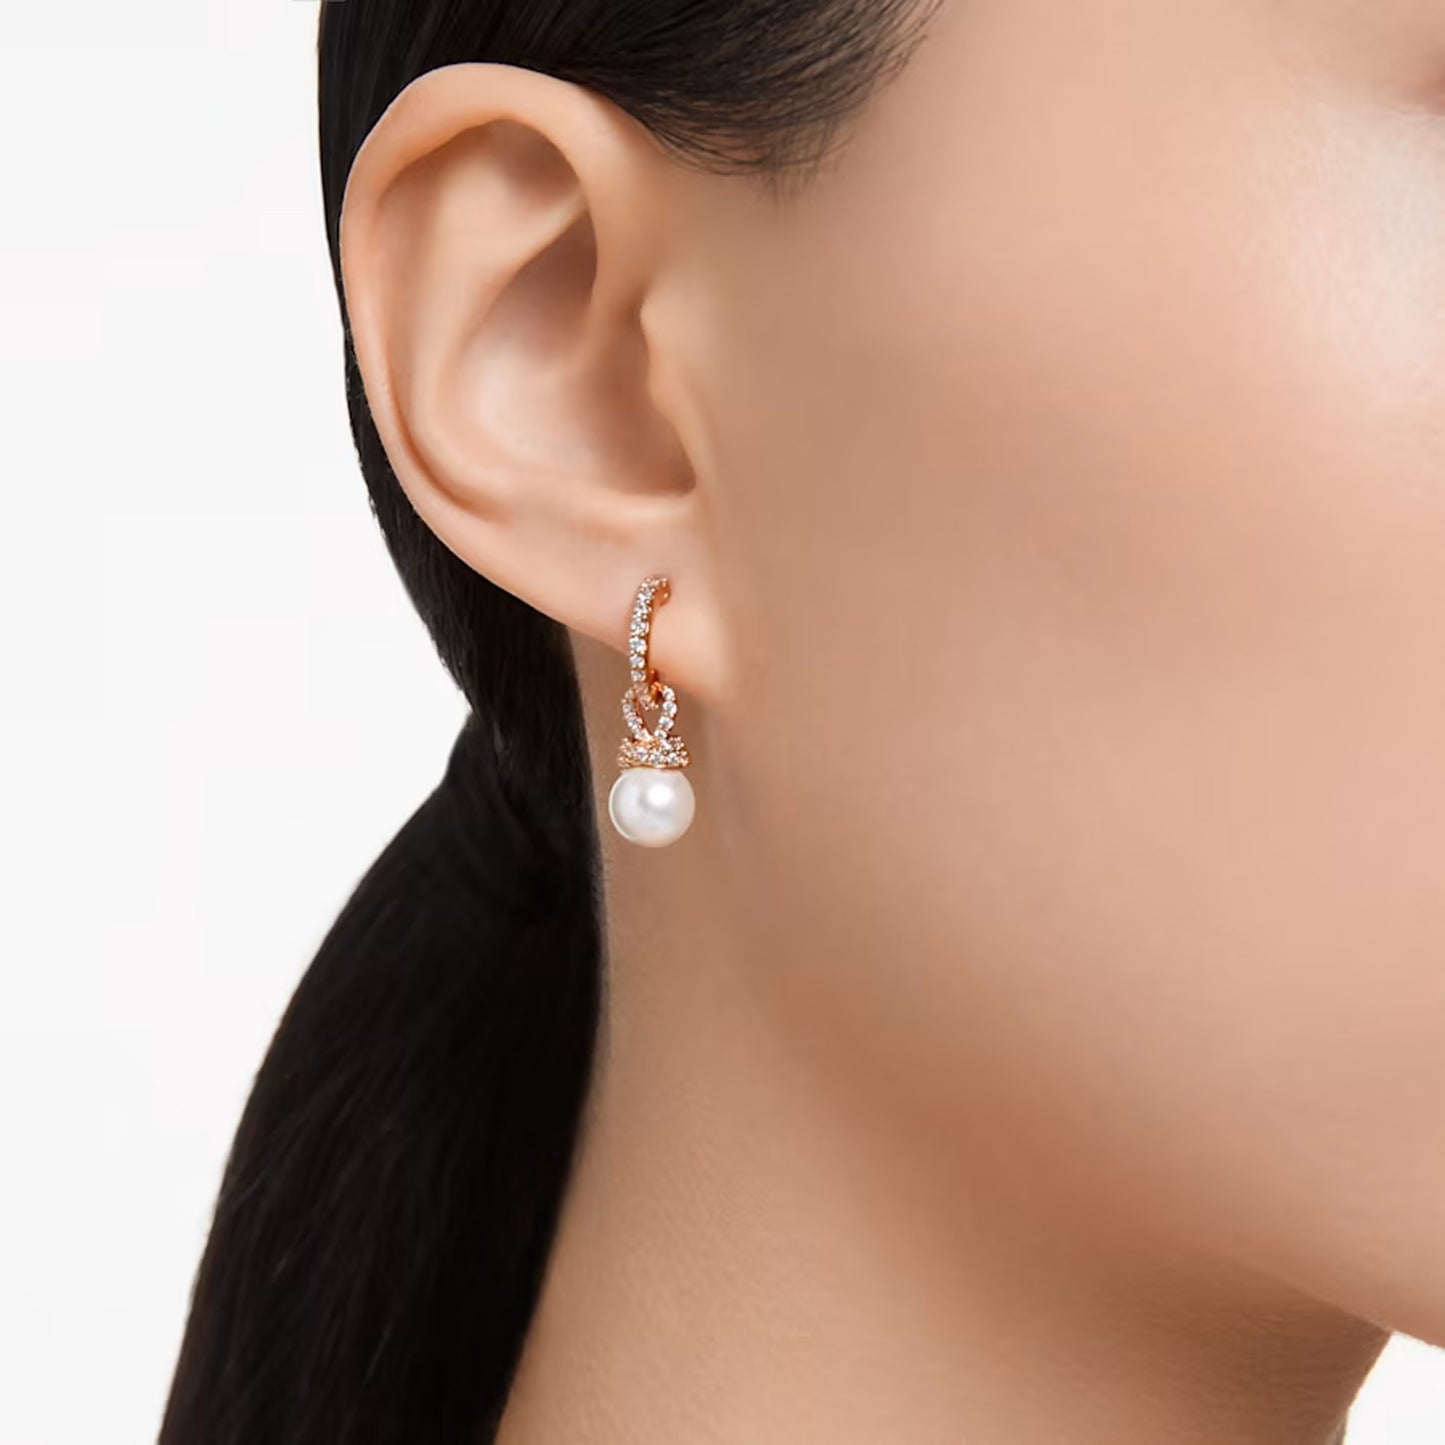 Originally drop earrings